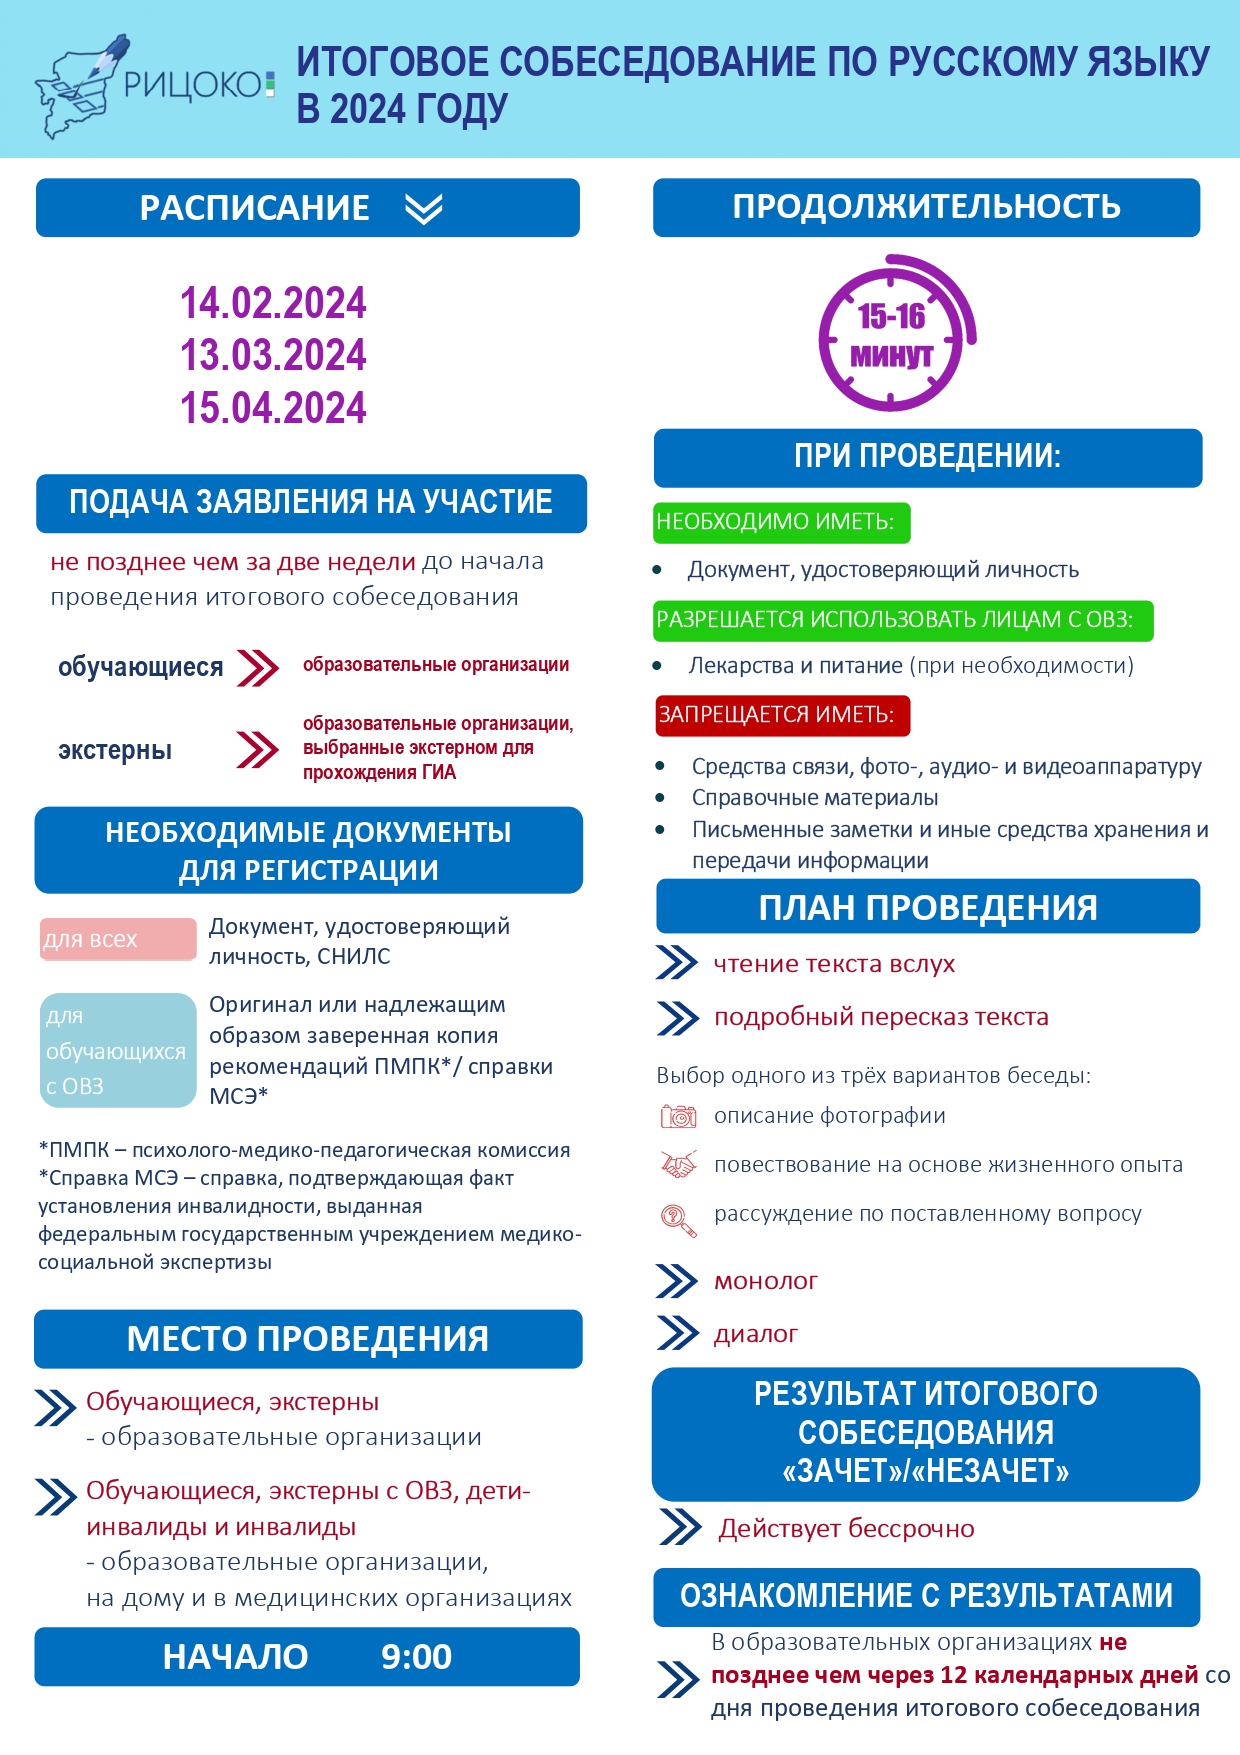 Порядок организации и проведения итогового собеседования по русскому языку в Курской области в 2024 году.